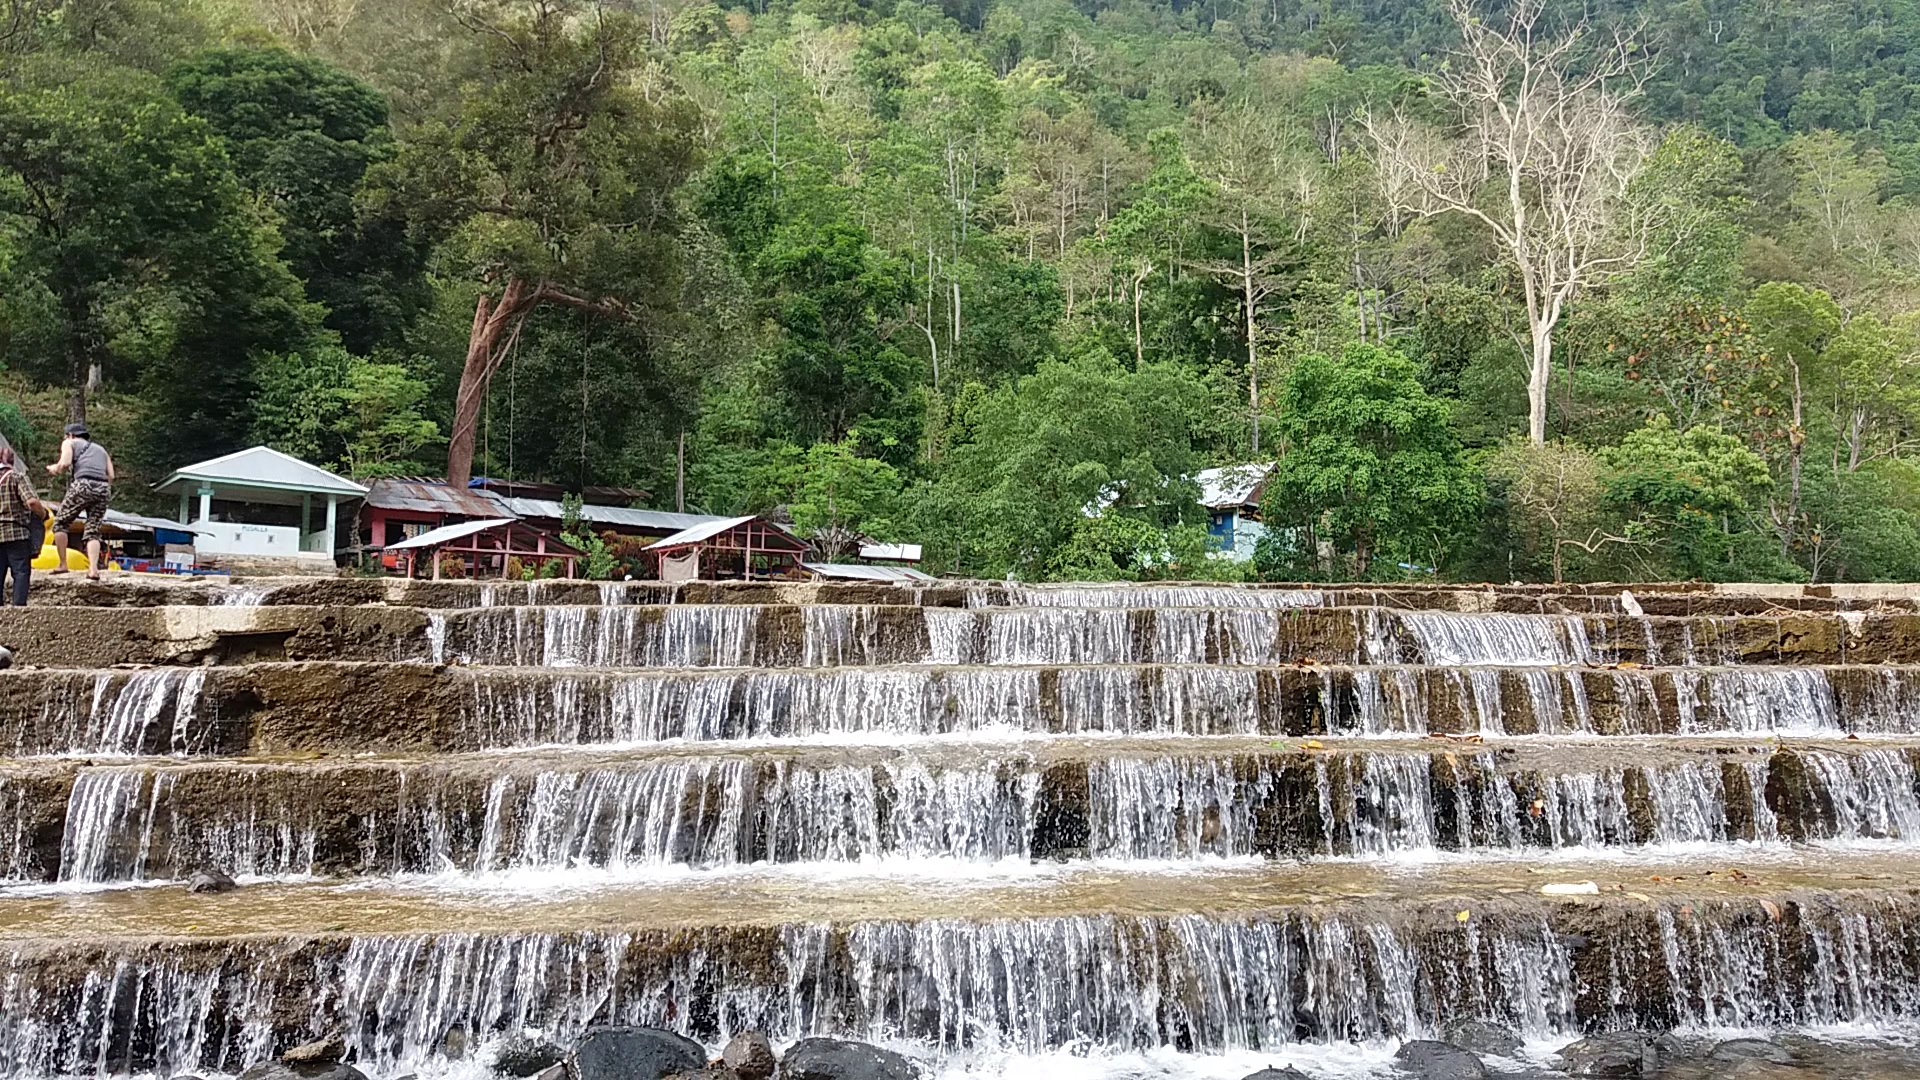 Brayeung, Leupung: Harga Tiket, Foto, Lokasi, Fasilitas dan Spot